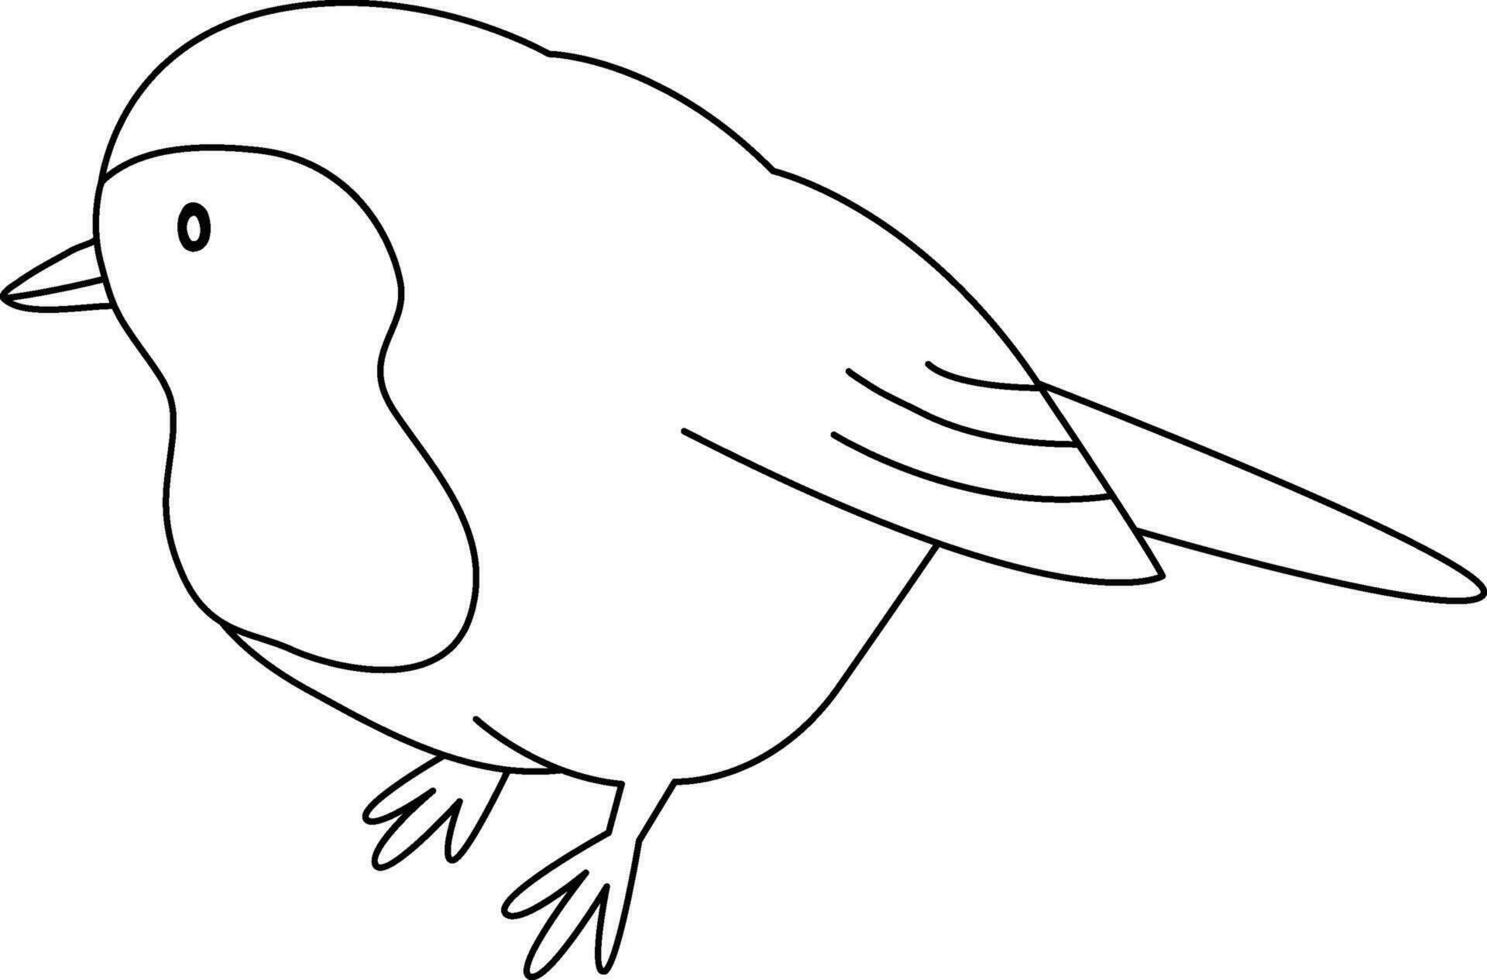 Robin pájaro, dibujos animados, dibujado con sencillo líneas, garabatear, dibujado a mano con un sencillo y suave estilo. el Robin pájaro es linda vector